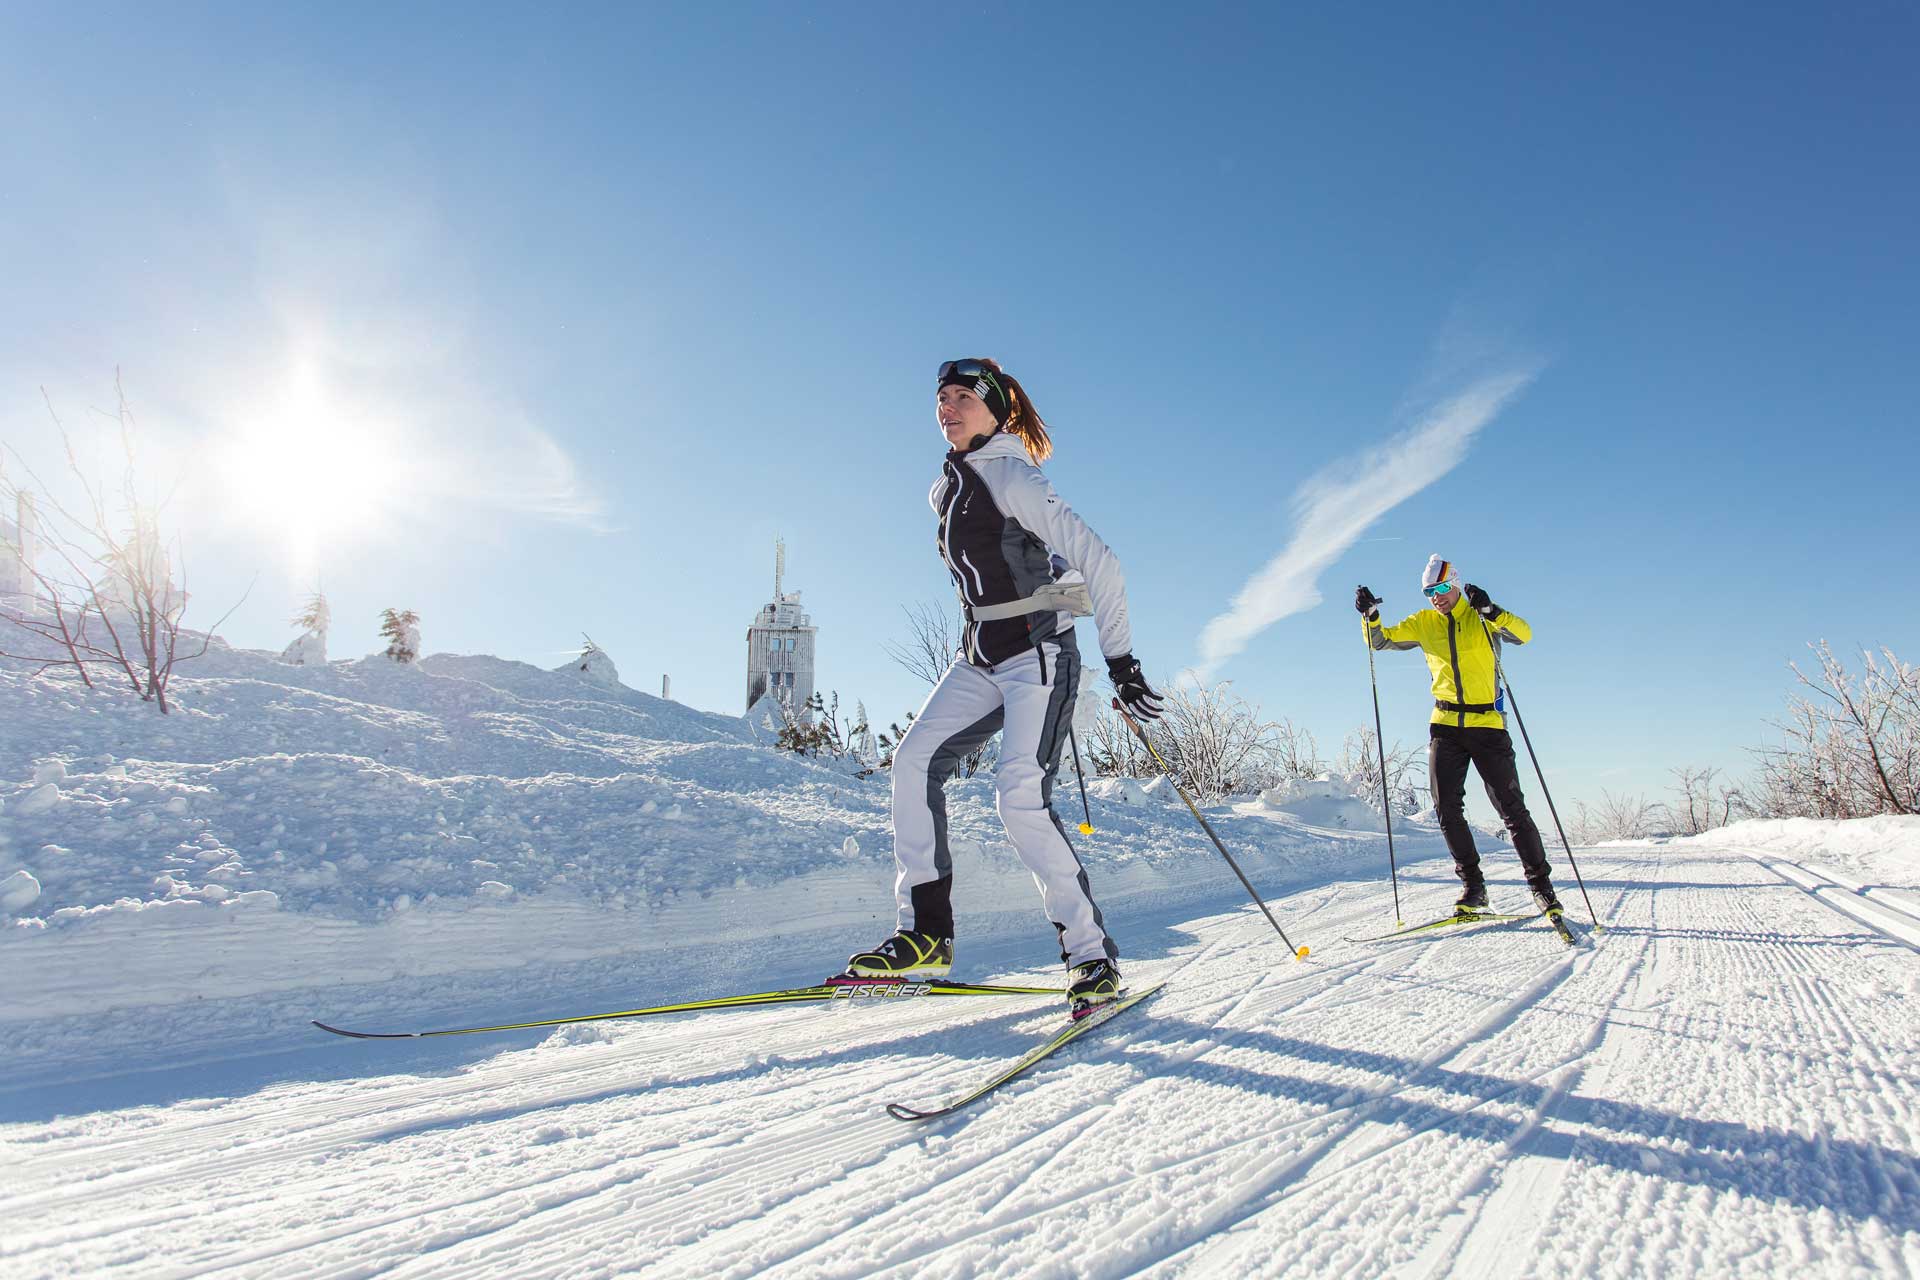 Ski-Lnagläufer in Winterlandschaft